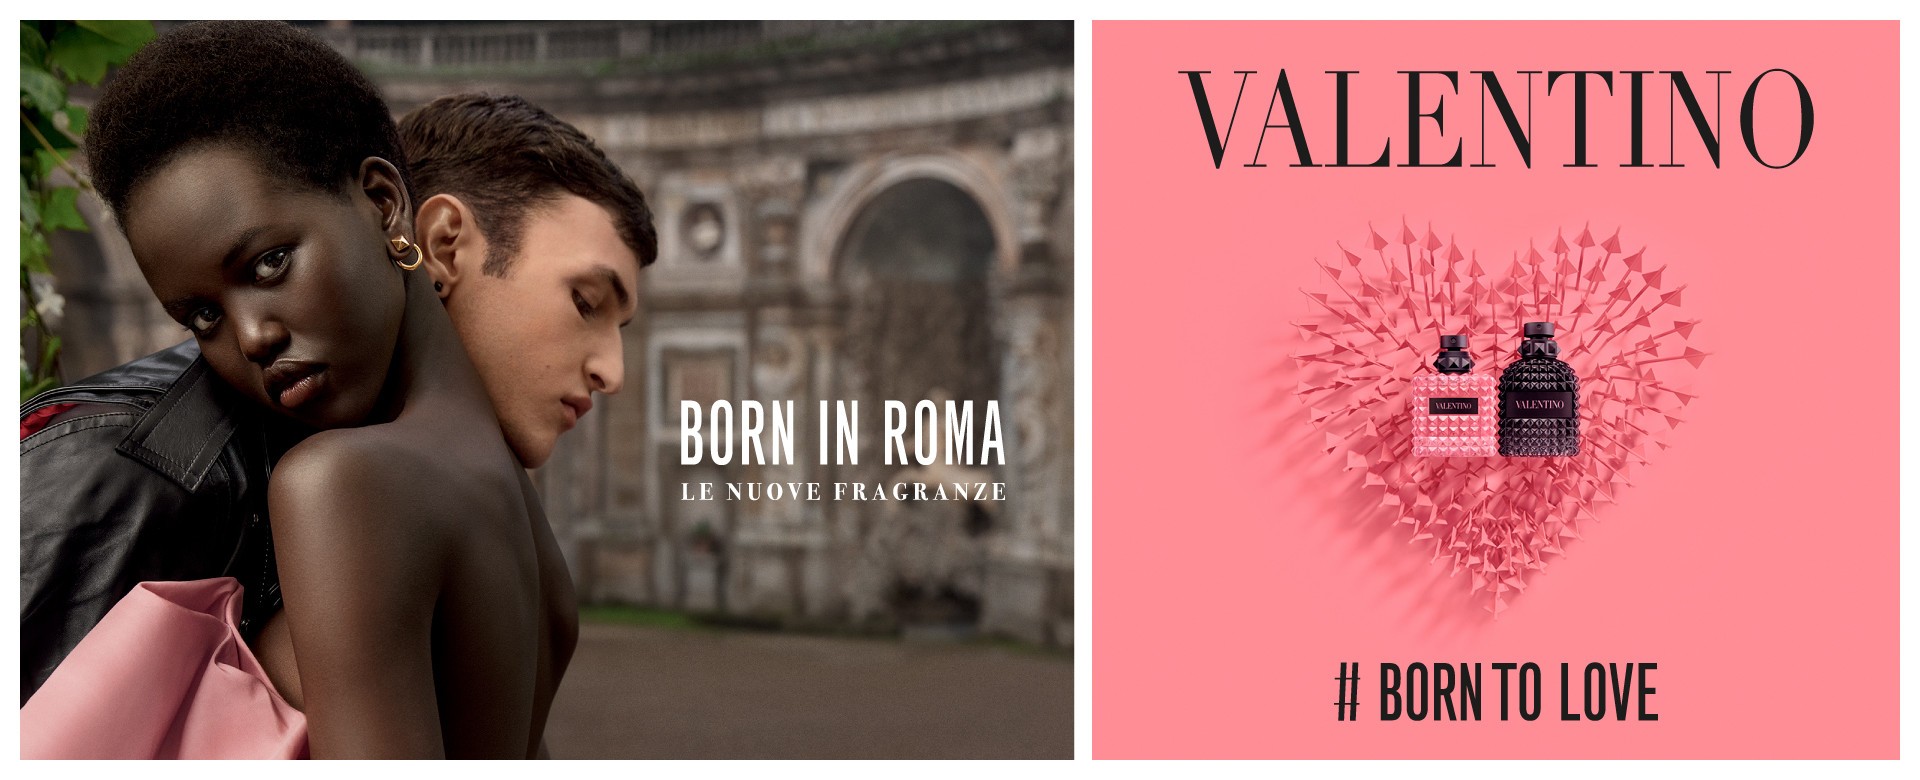 Valentino Born in Roma Donna